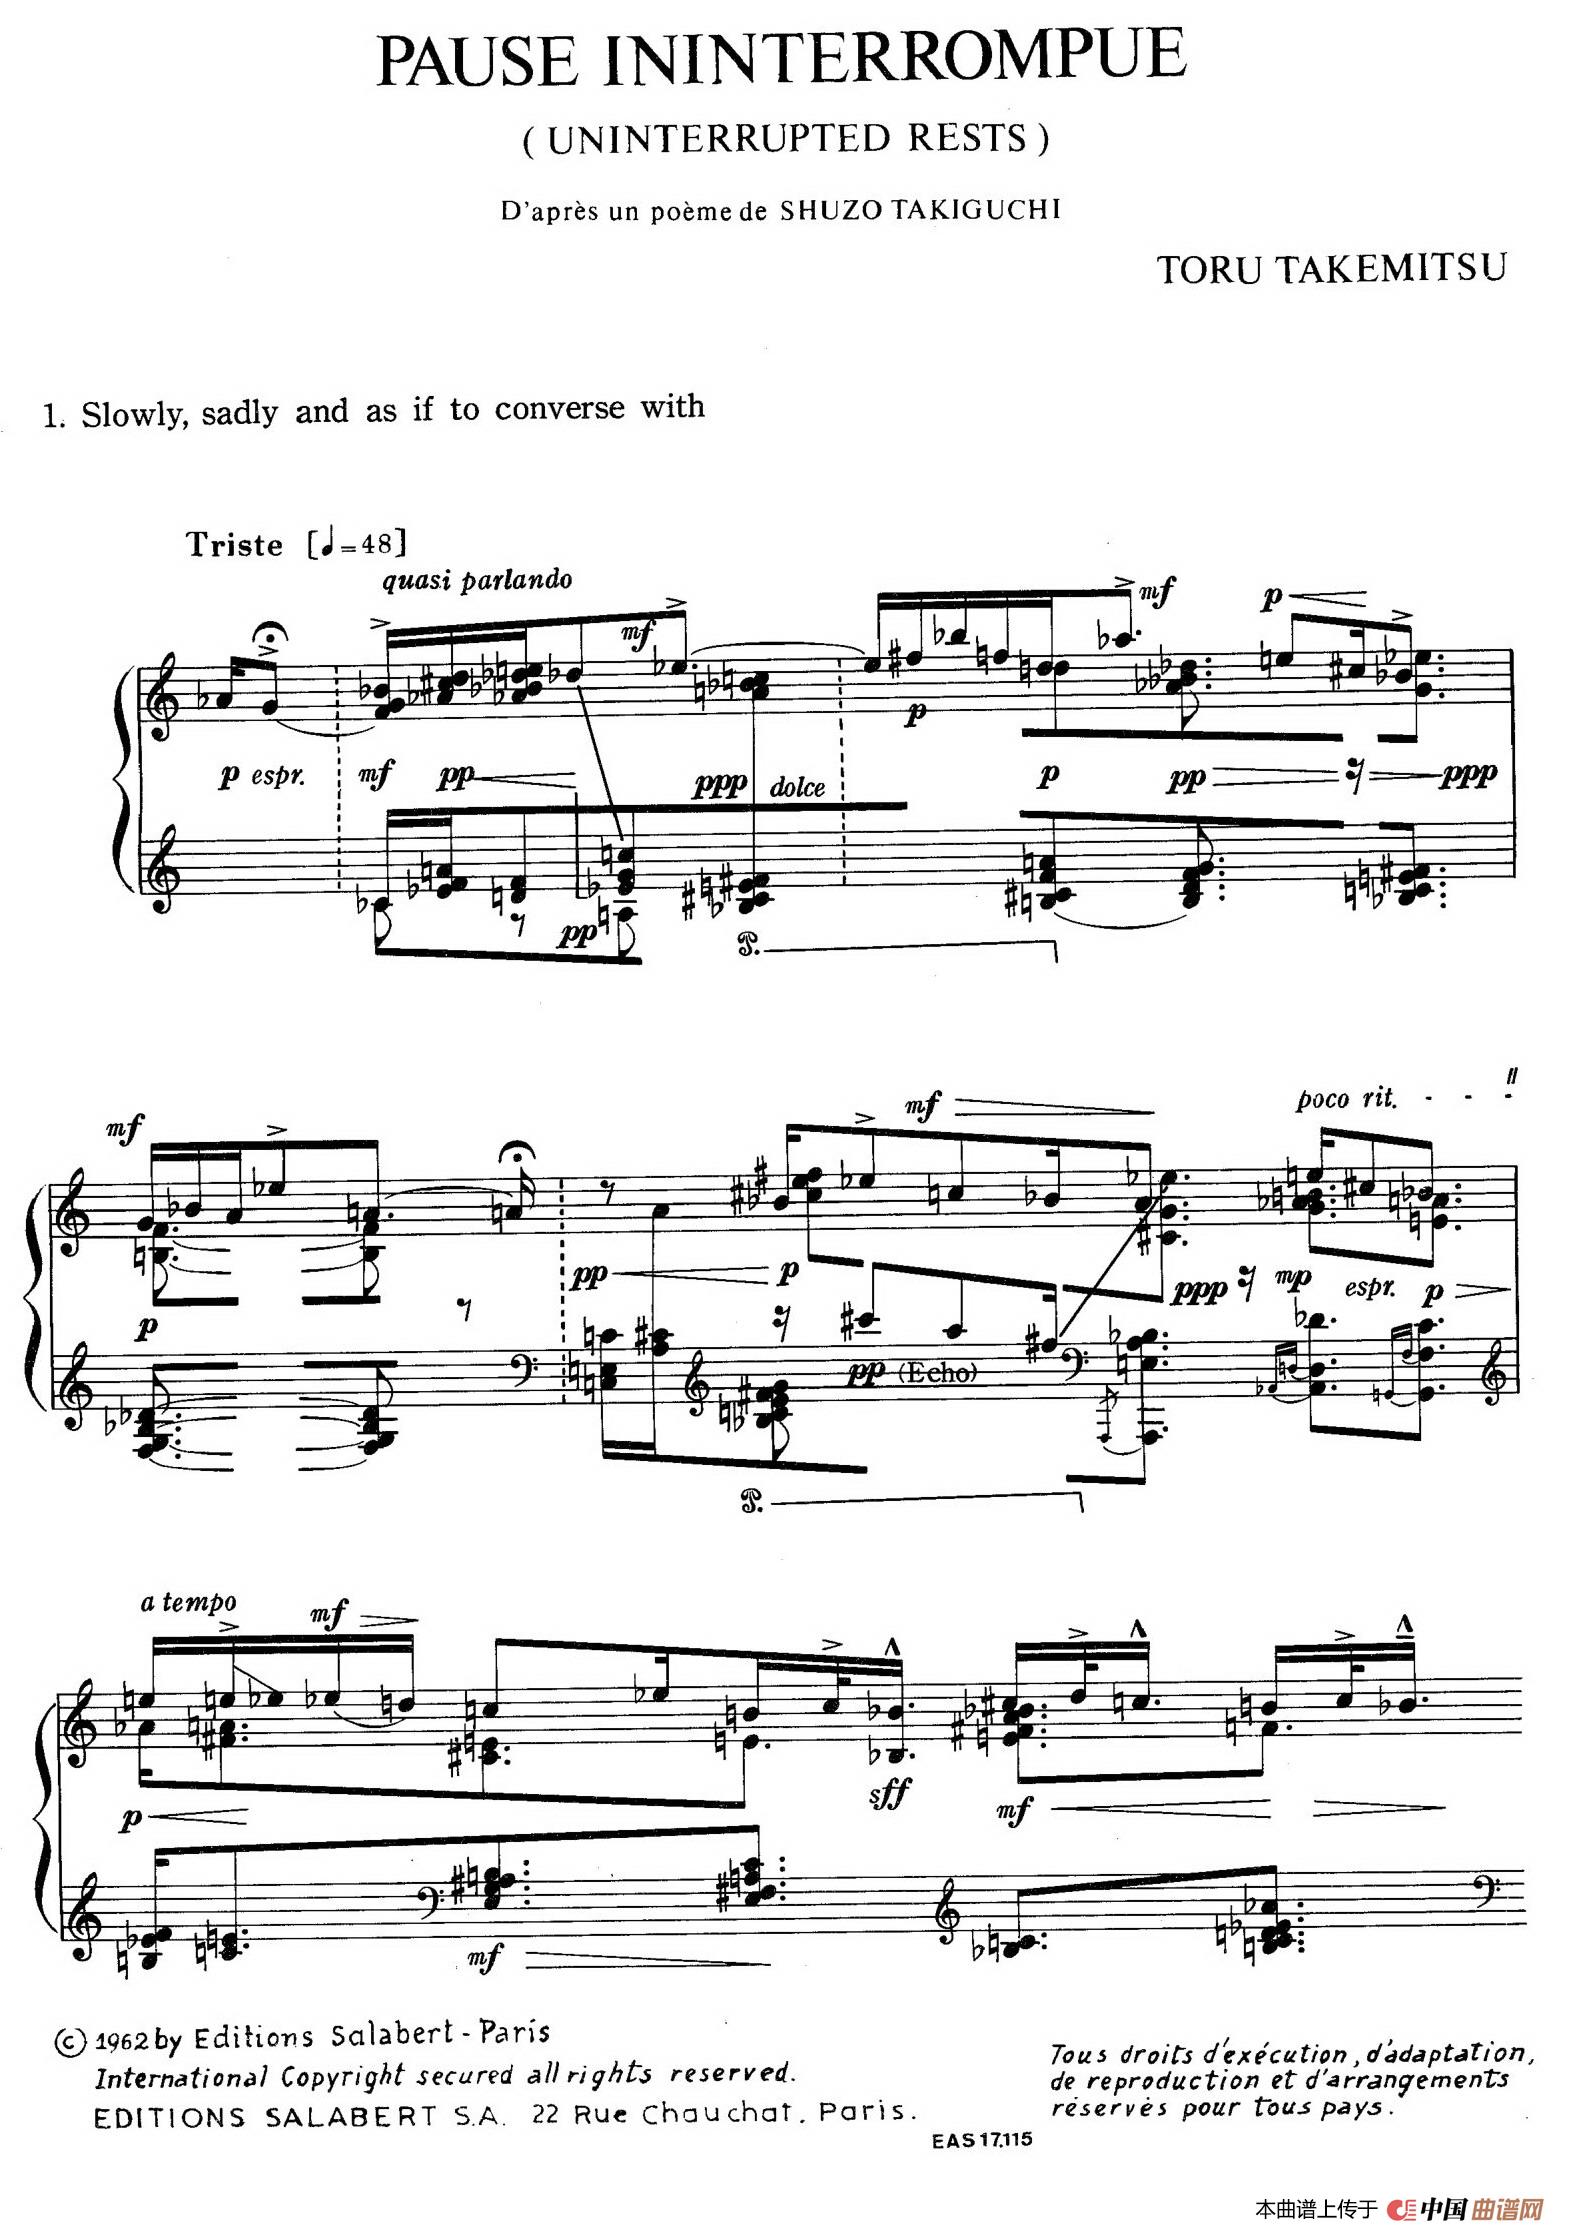 《Pause Ininterrompue 》钢琴曲谱图分享